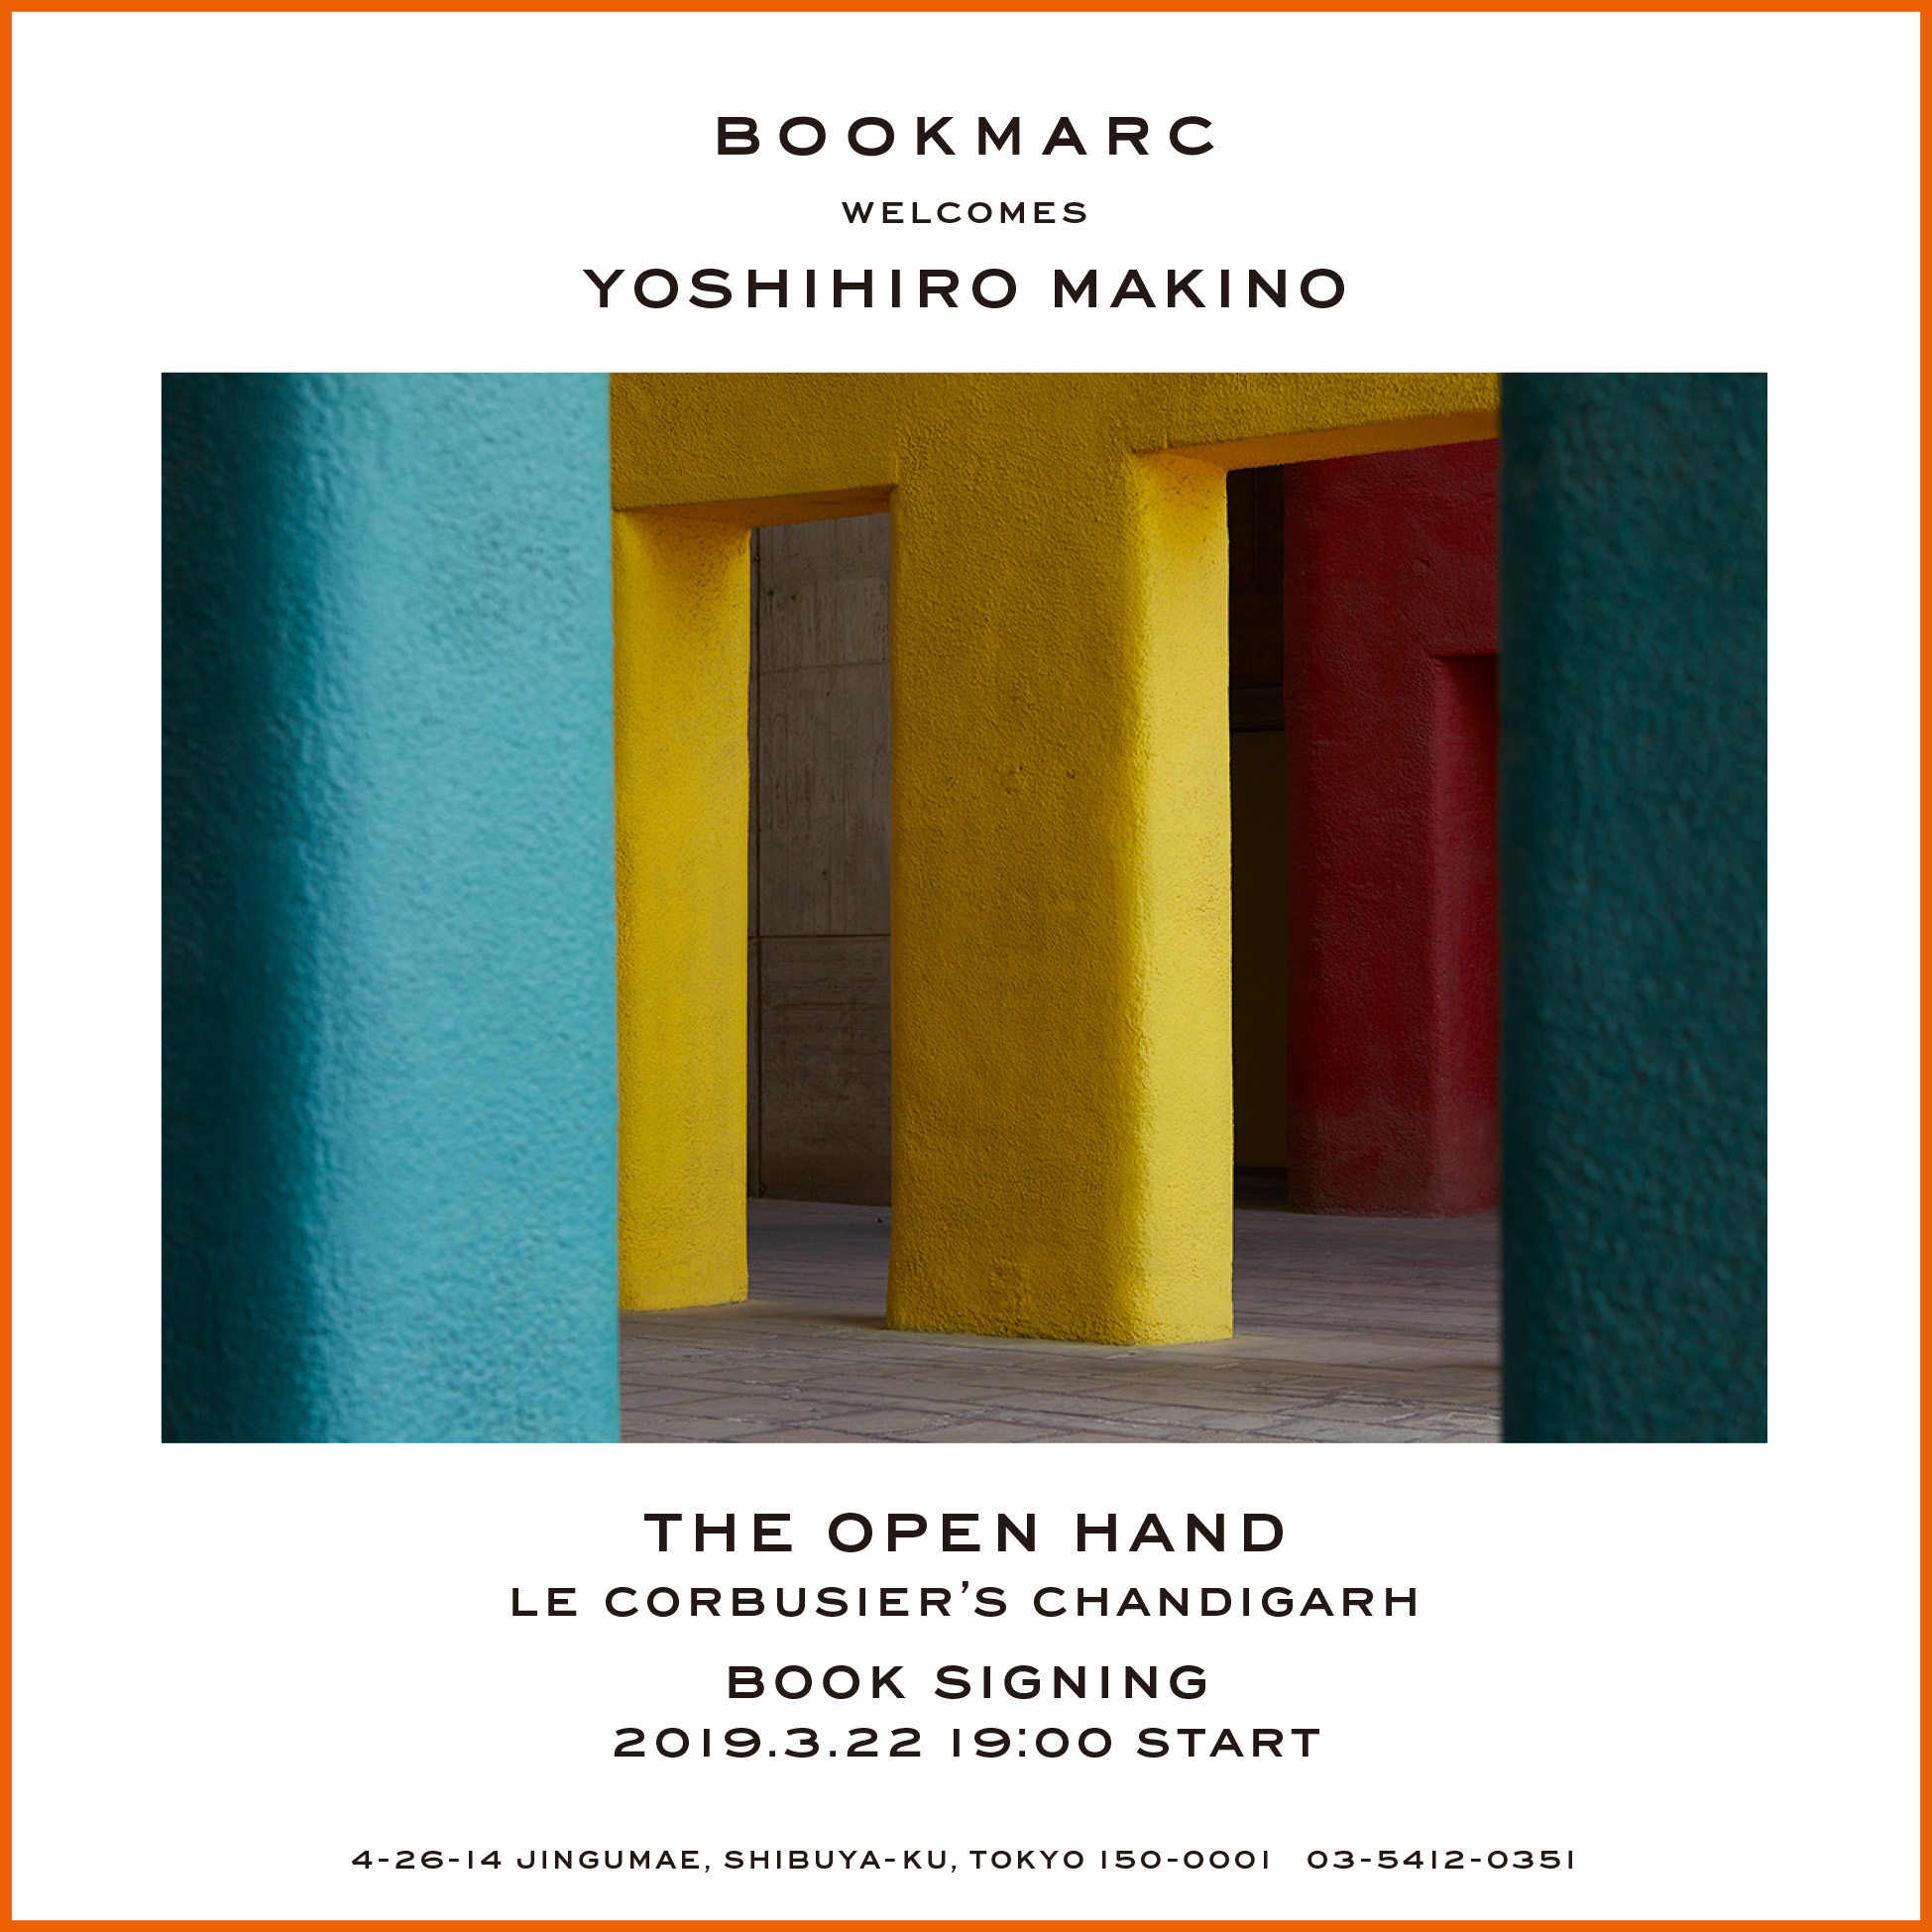 写真家 Yoshihiro Makino による、世界的建築家ル・コルビュジエの建物群を撮影した写真集の日本上陸を記念して『BOOKMARC』にてサイン会を開催！ 